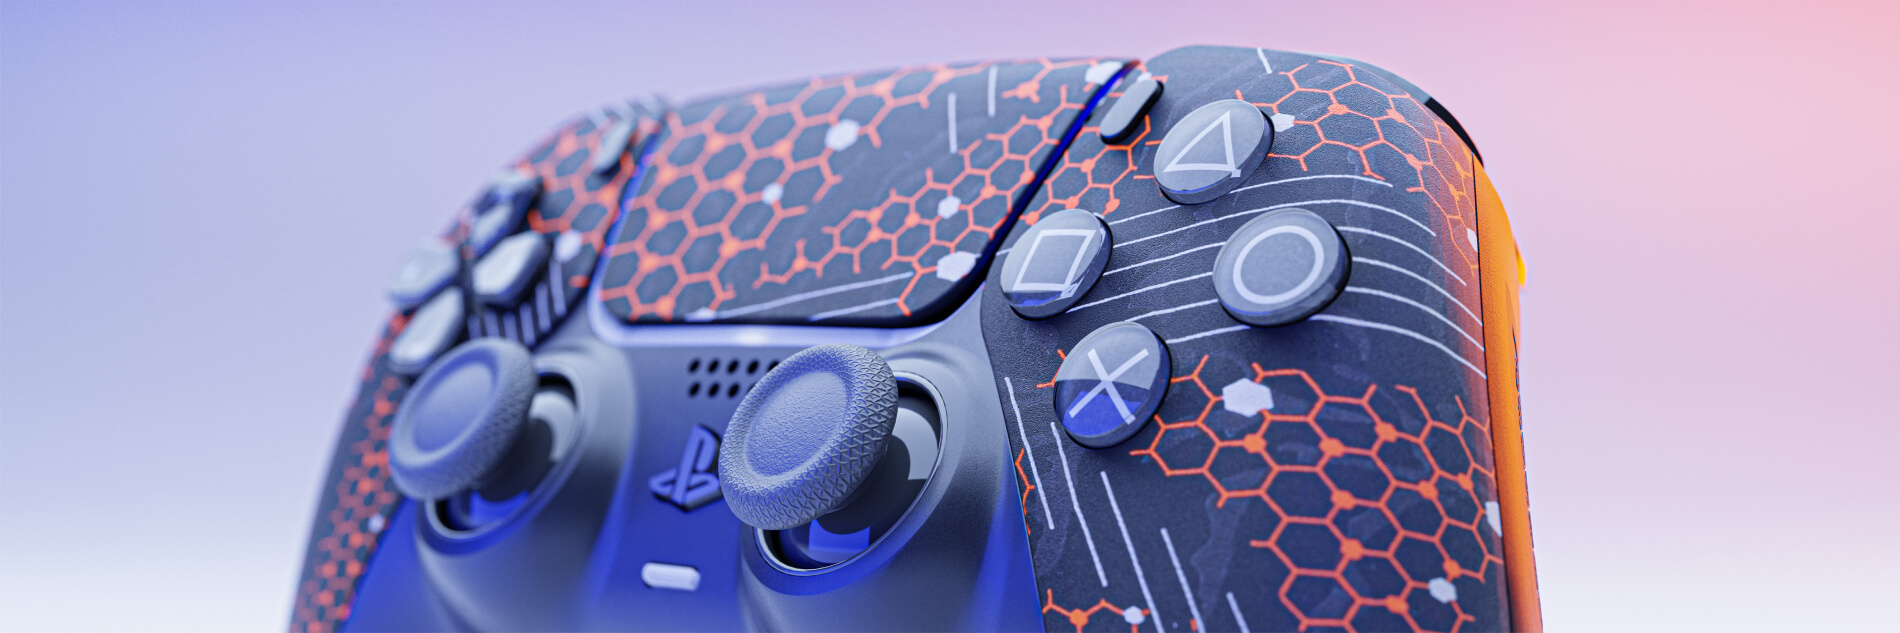 Playstation 5 Digital Brandywine - X Controllers - Mandos Personalizados